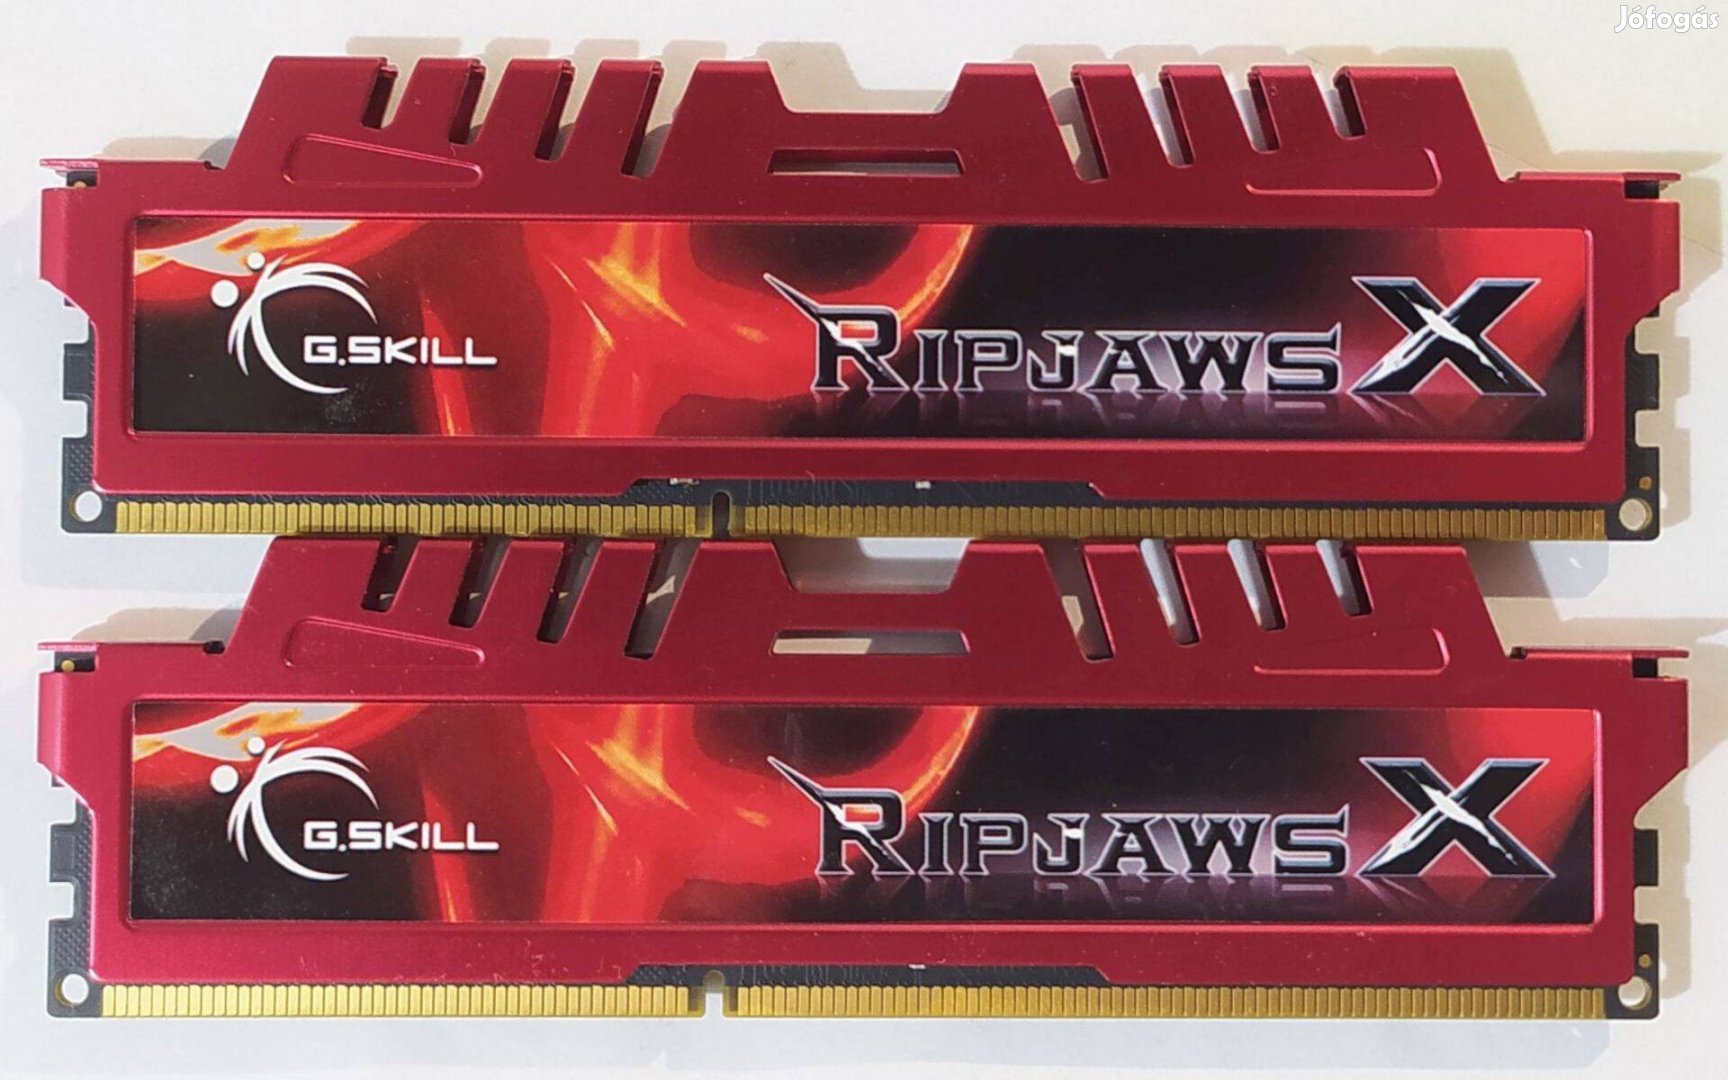 G.Skill Ripjaws 16GB (2x8GB) DDR3 1600MHz cl10 memória